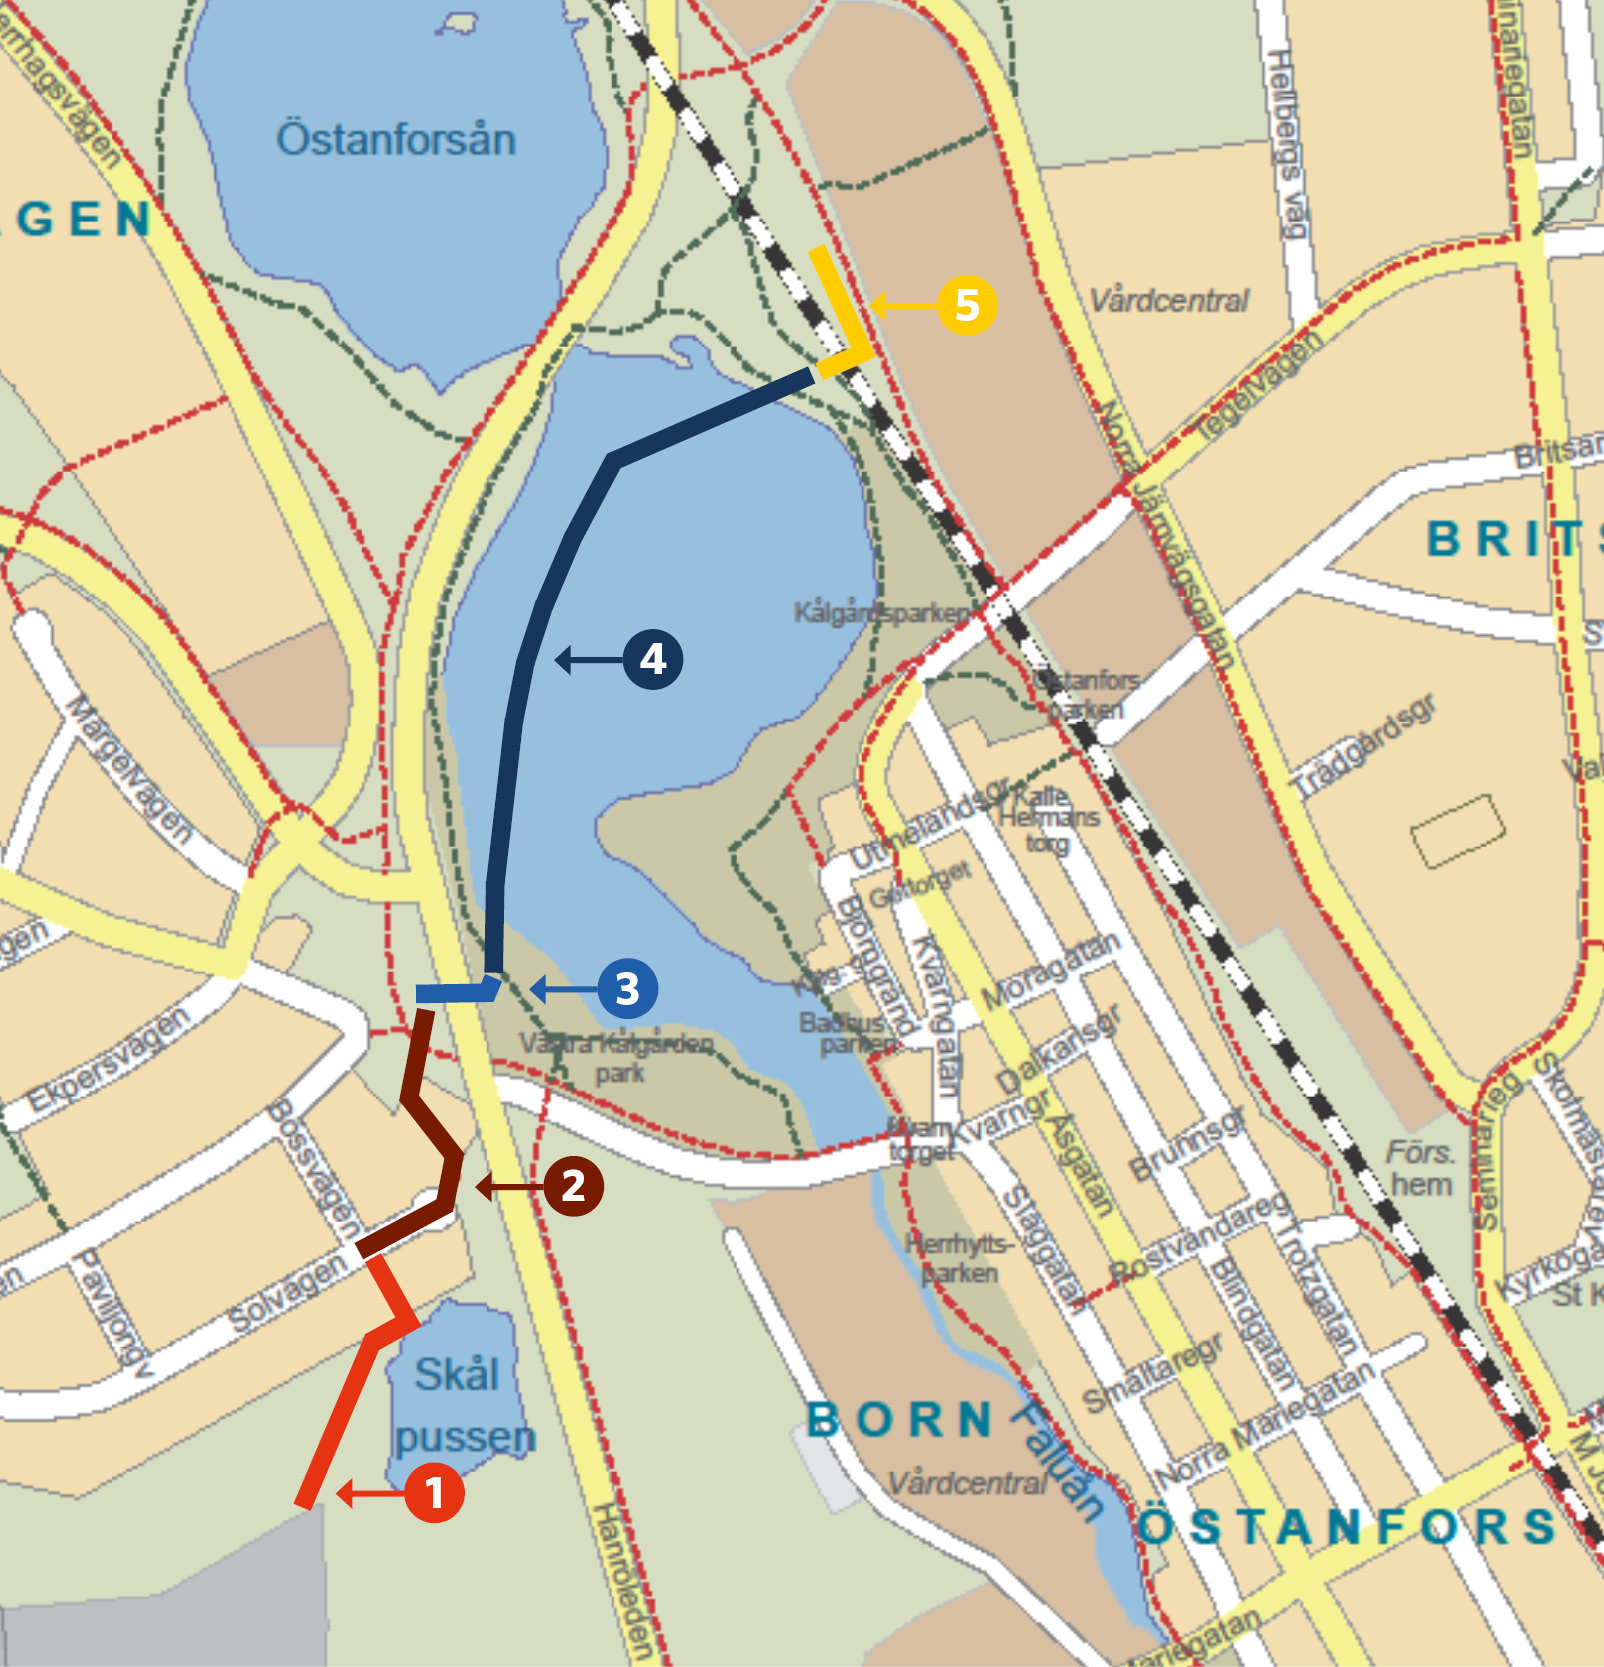 Bilden visar en karta över området kring E16 och Britsarvet i Falun. Kartan innehåller fem färgade sträckor. Röd sträcka löper intill Skålpussen. Brun sträcka löper från Solvägen längs med E16. Blå sträcka går under E16. Mörkblå sträcka löper från Västra Kålgårdsparken över dammen och mot vattenverket. Gul sträcka går under järnväg och längs med järnvägen en kortare sträcka mot Bojsenberg-hållet. 